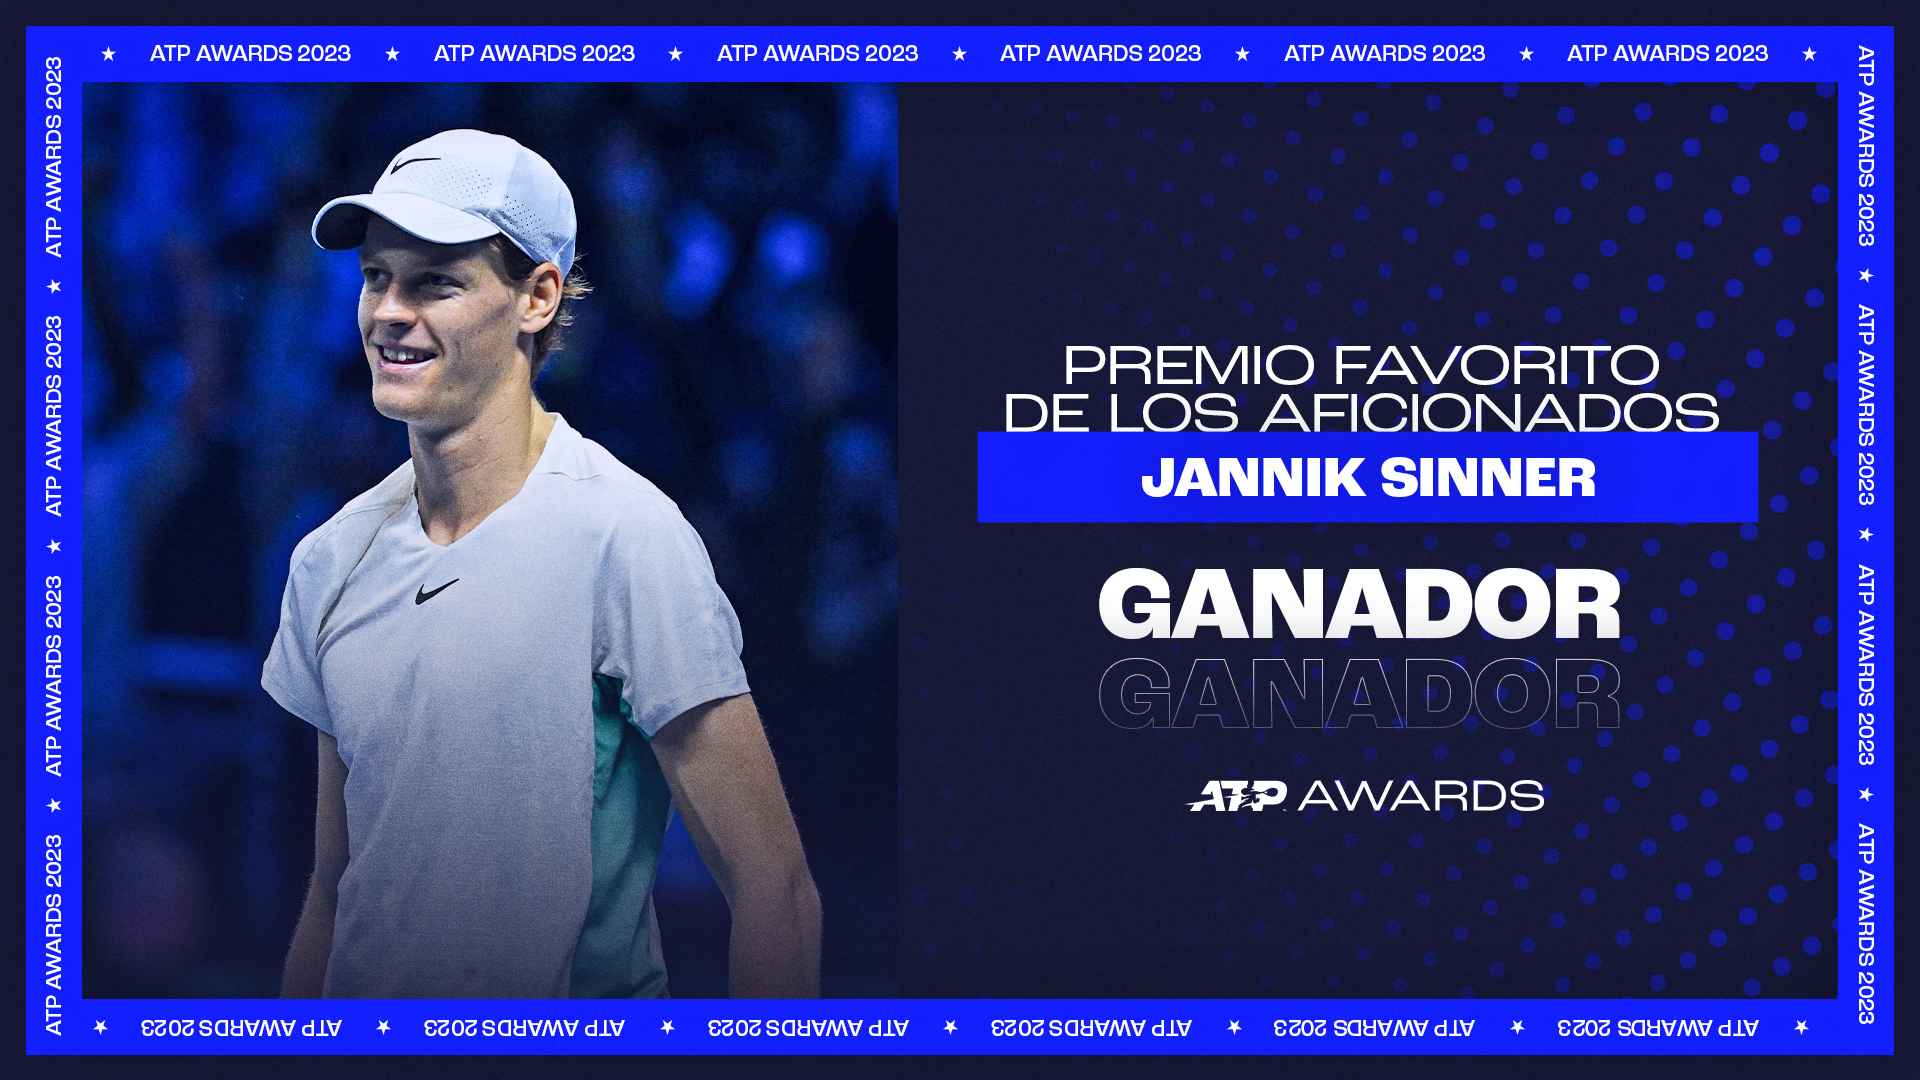 Sinner Es Elegido Favorito De Los Aficionados En Los Premios ATP 2023